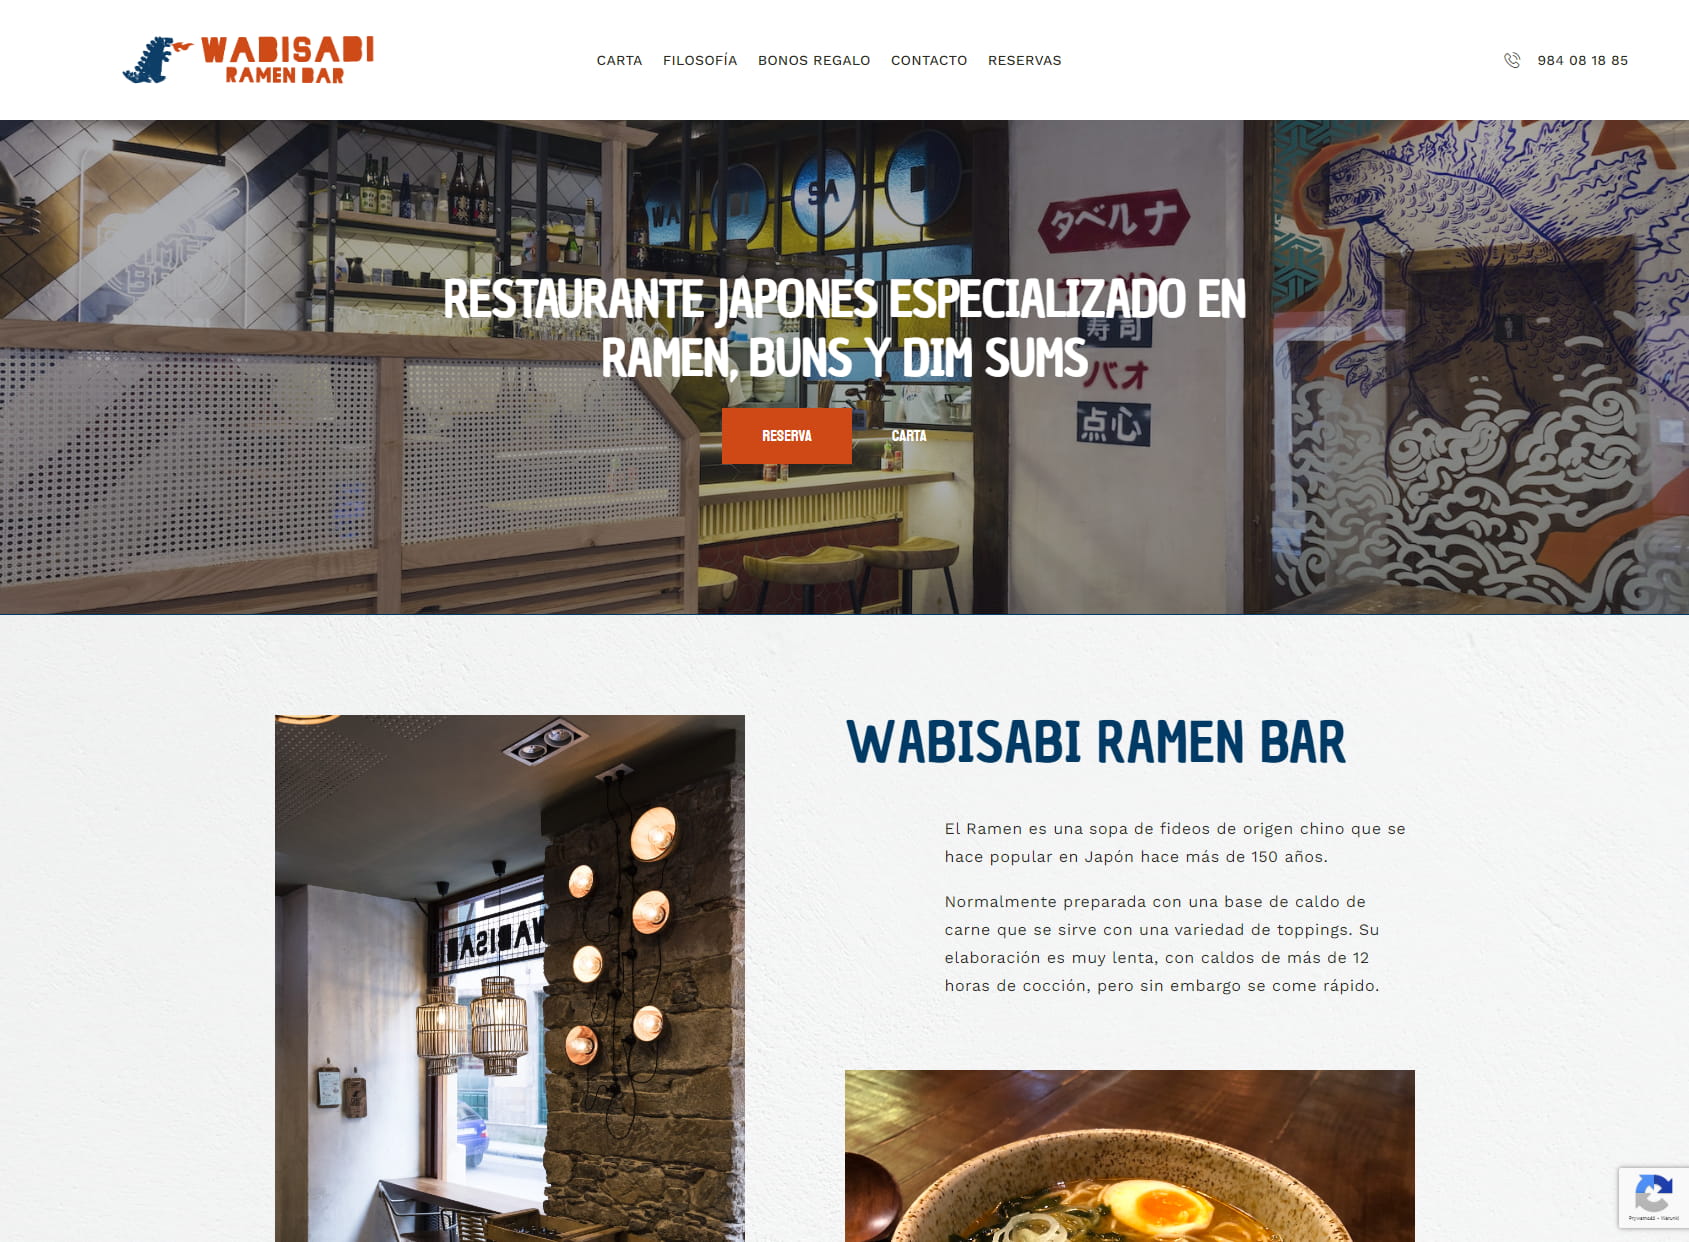 Wabisabi Ramen Bar